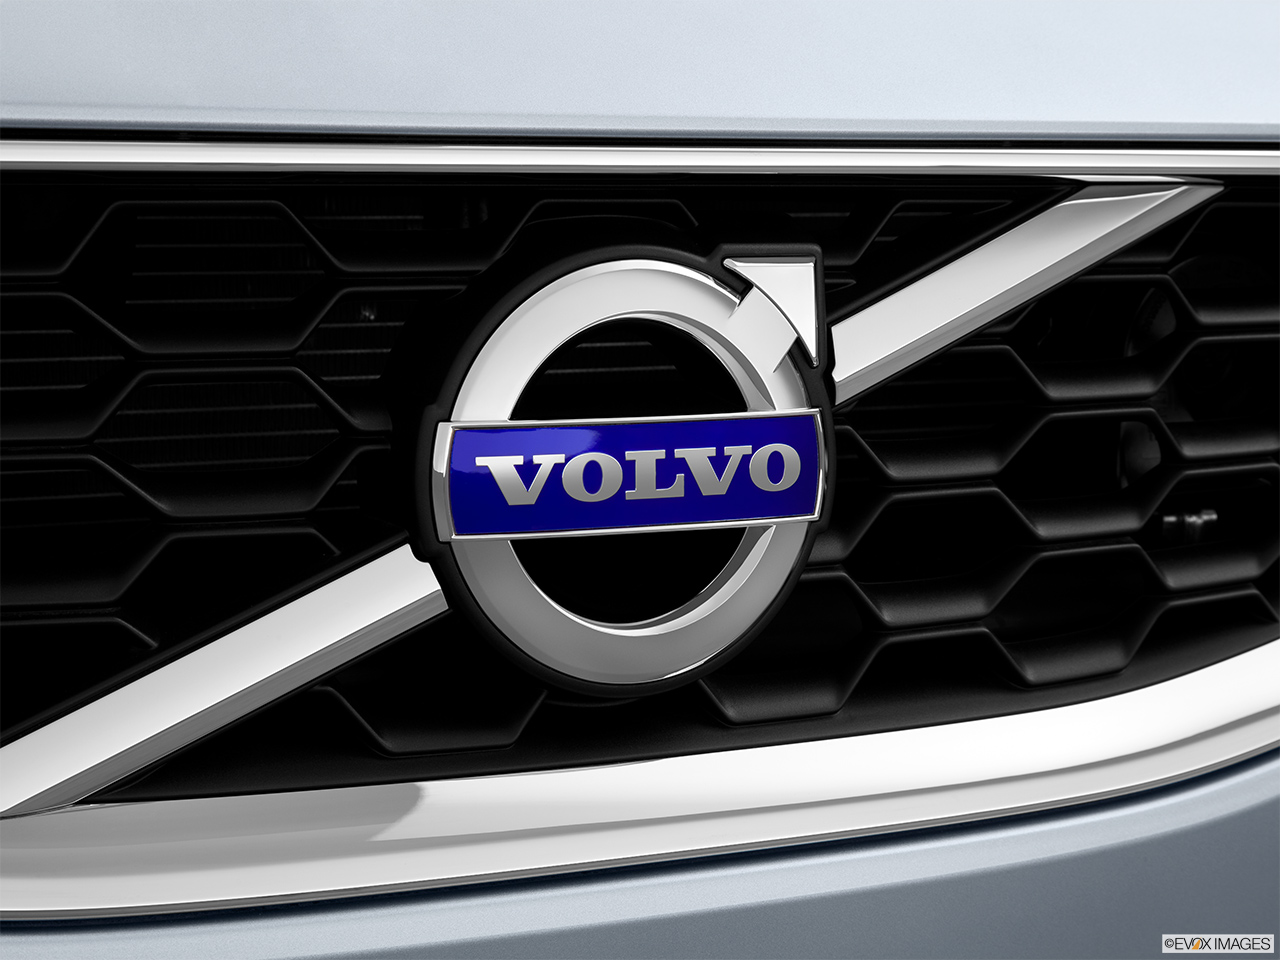 2013 Volvo C30 T5 Premier Plus Rear manufacture badge/emblem 